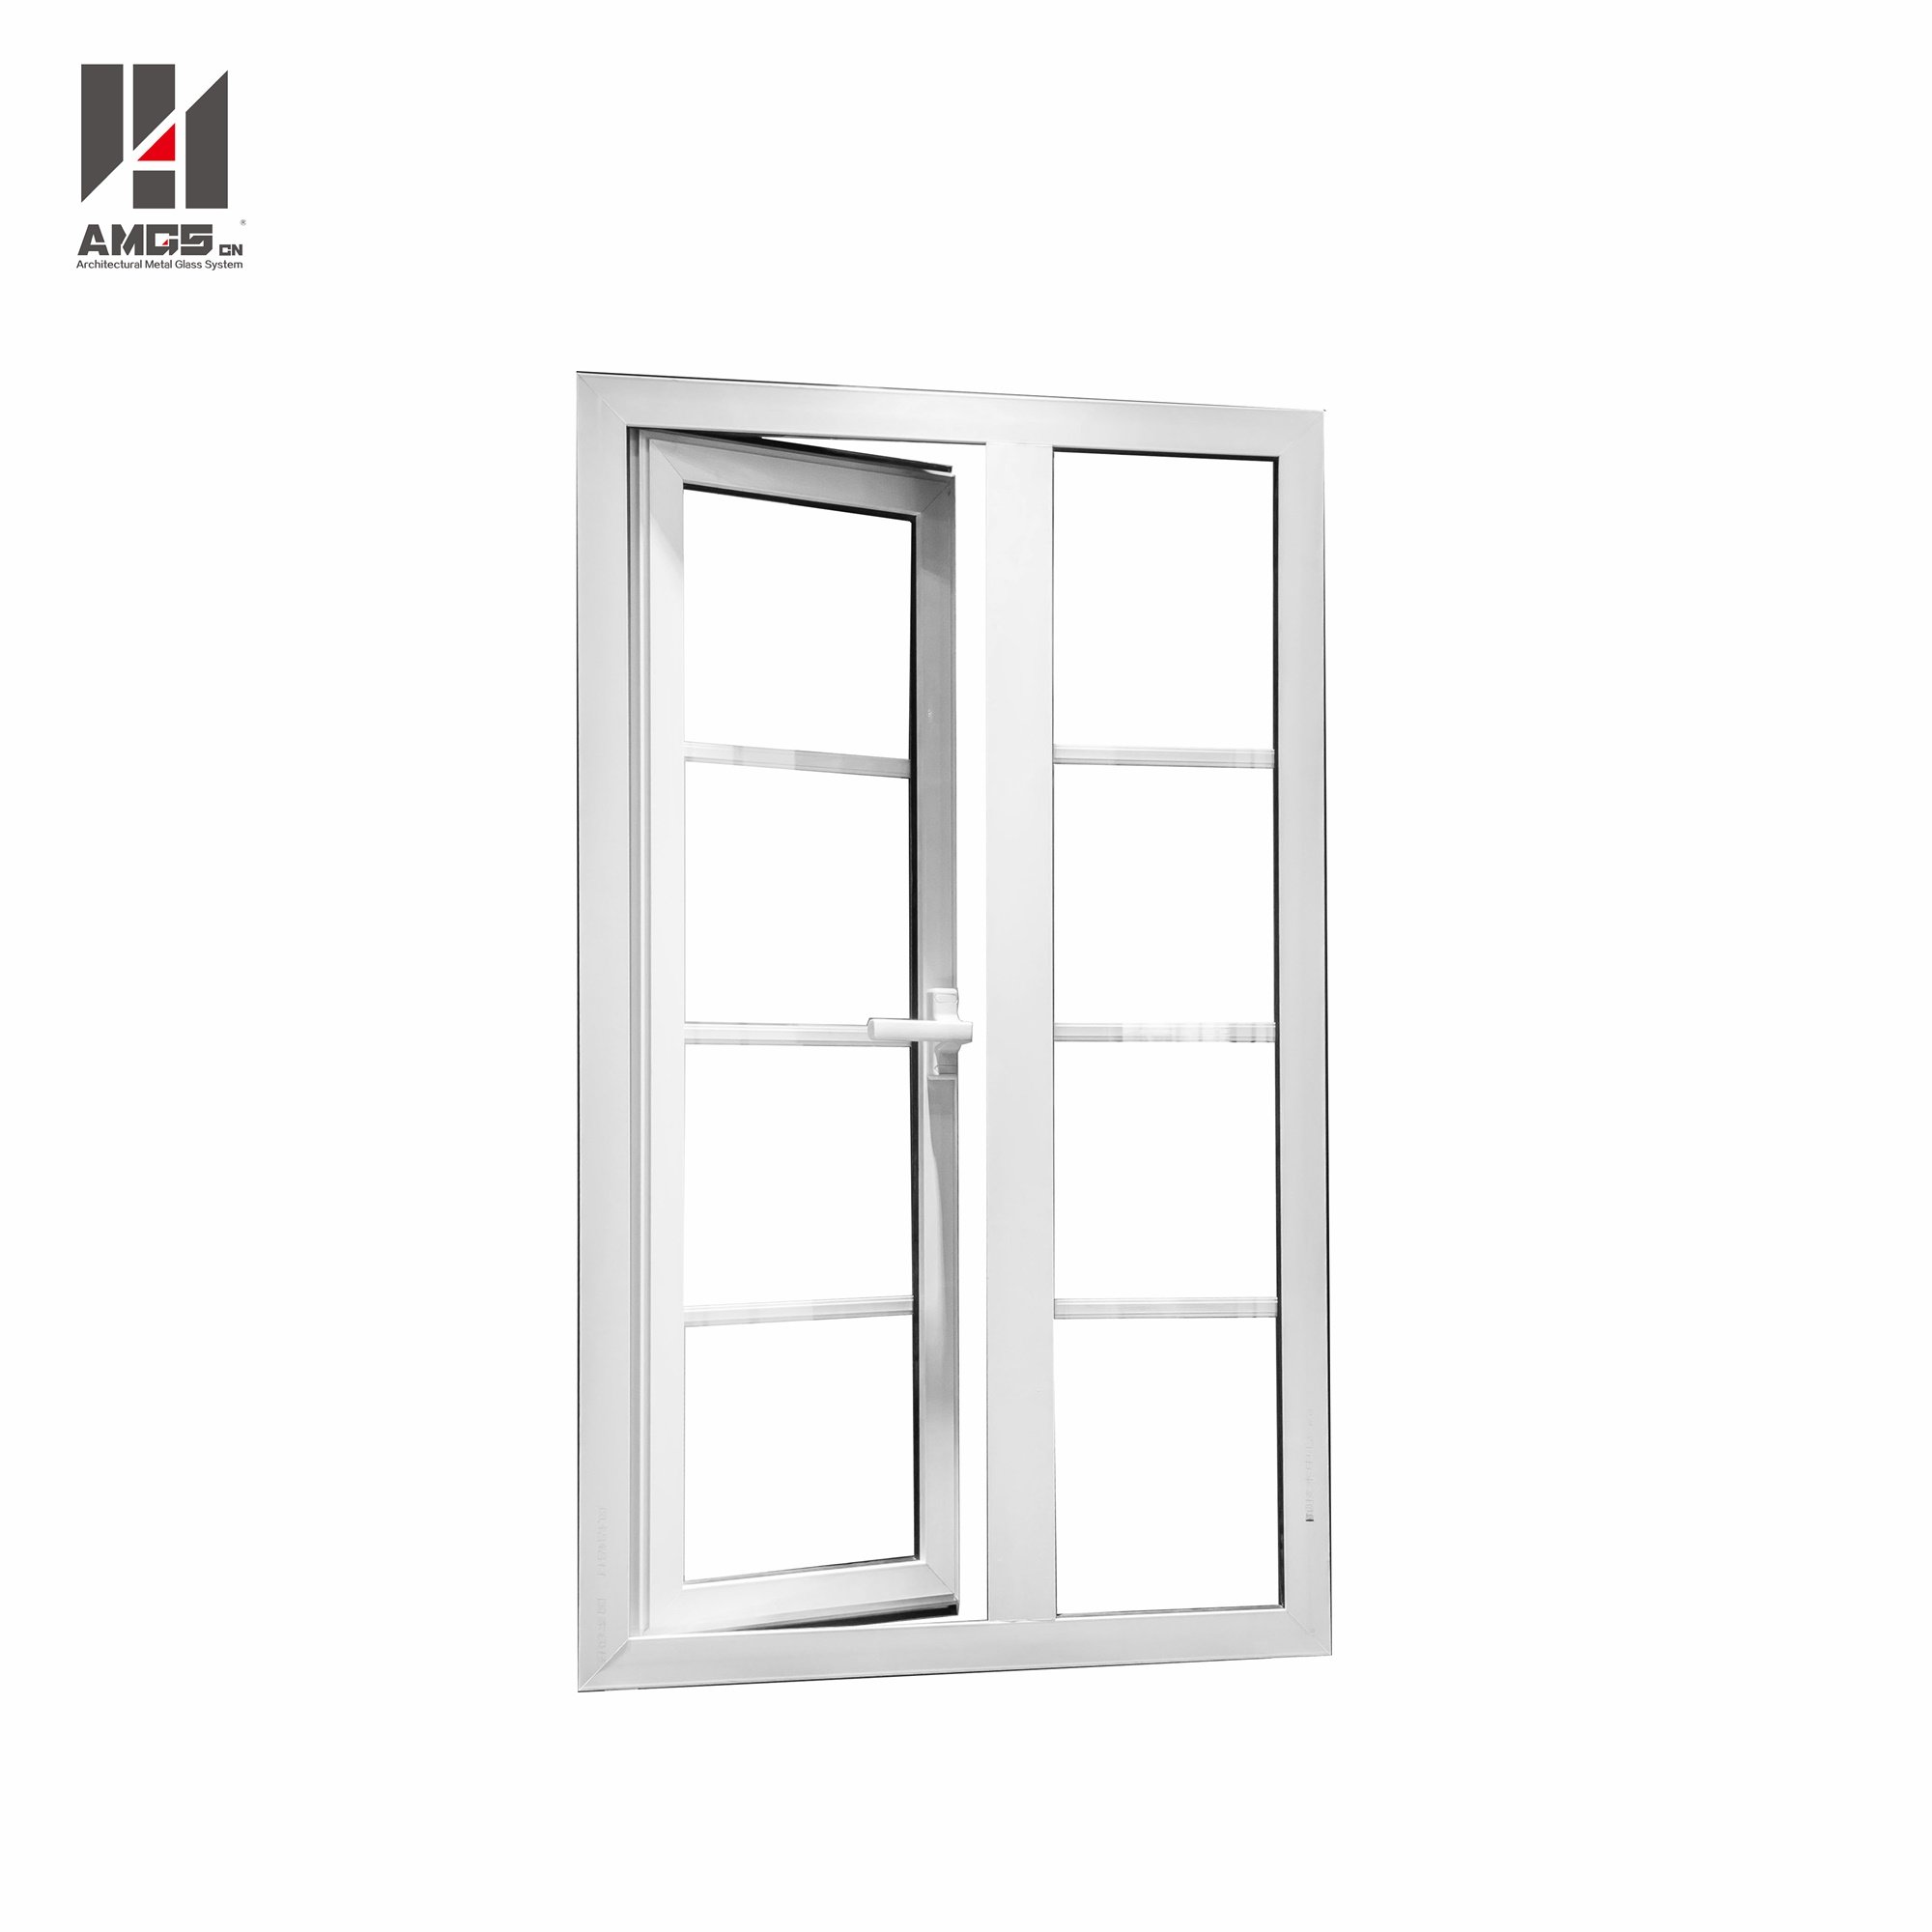 White Aluminum Casement Doors Windows With Grill Design